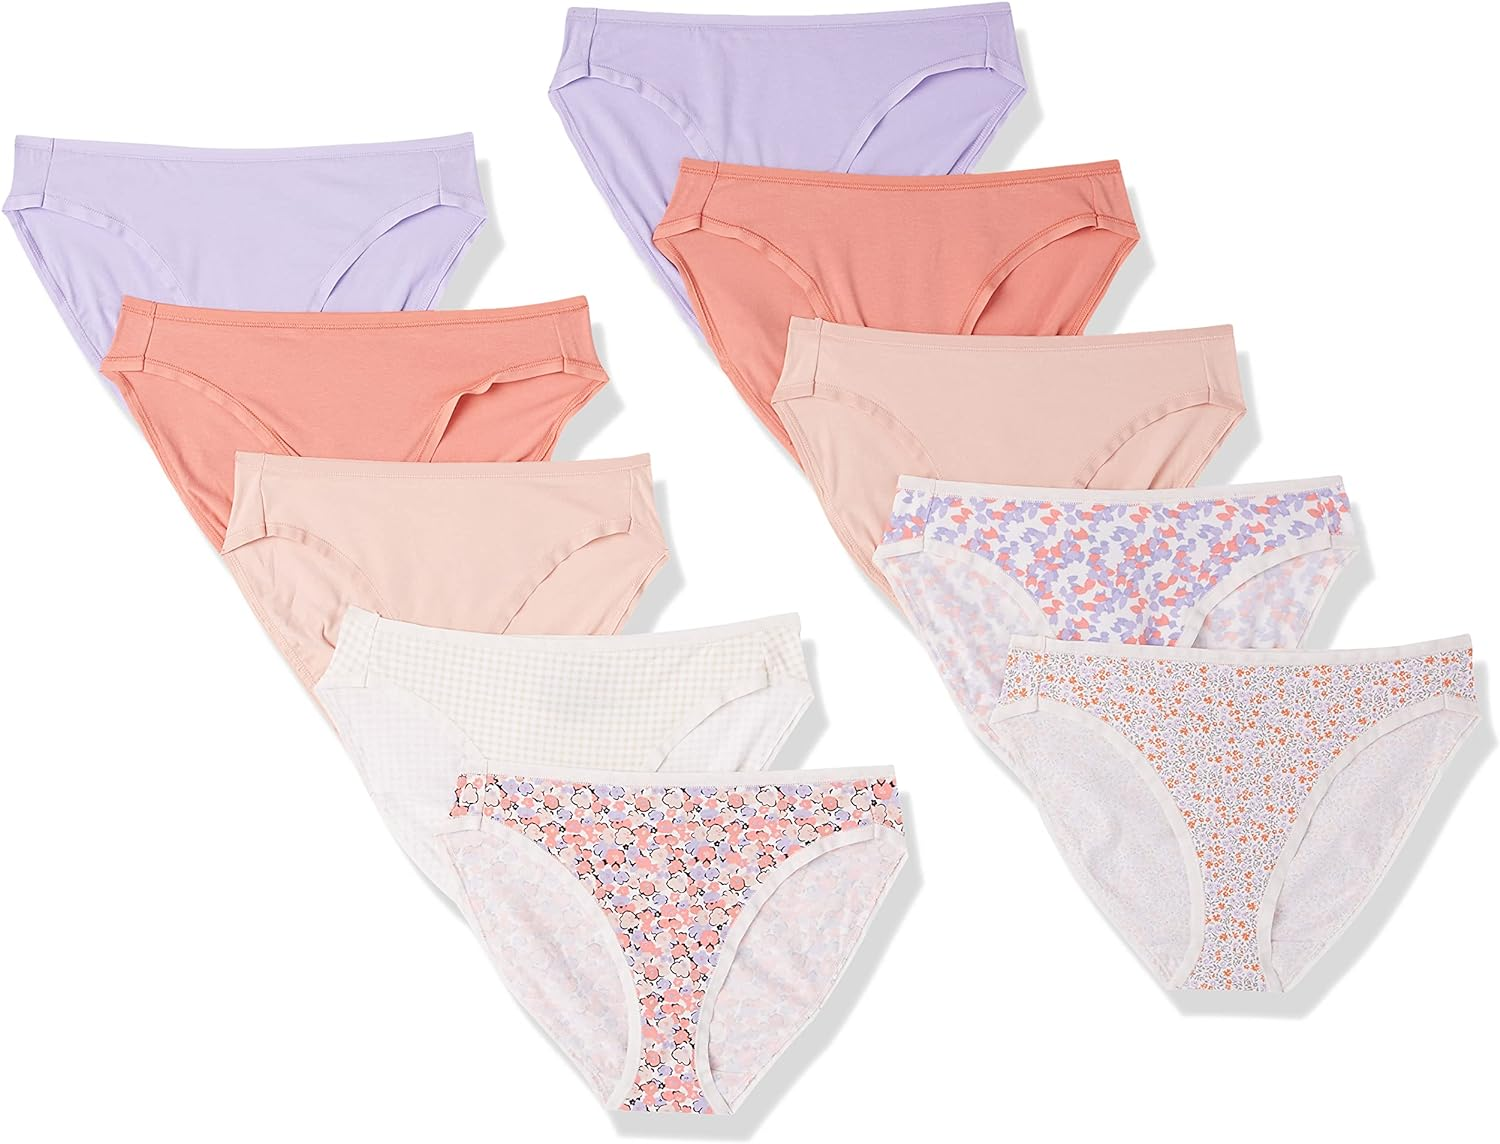 Amazon Essentials Women's Cotton High Leg Brief Underwear, pack of 10, size xs only $6.80